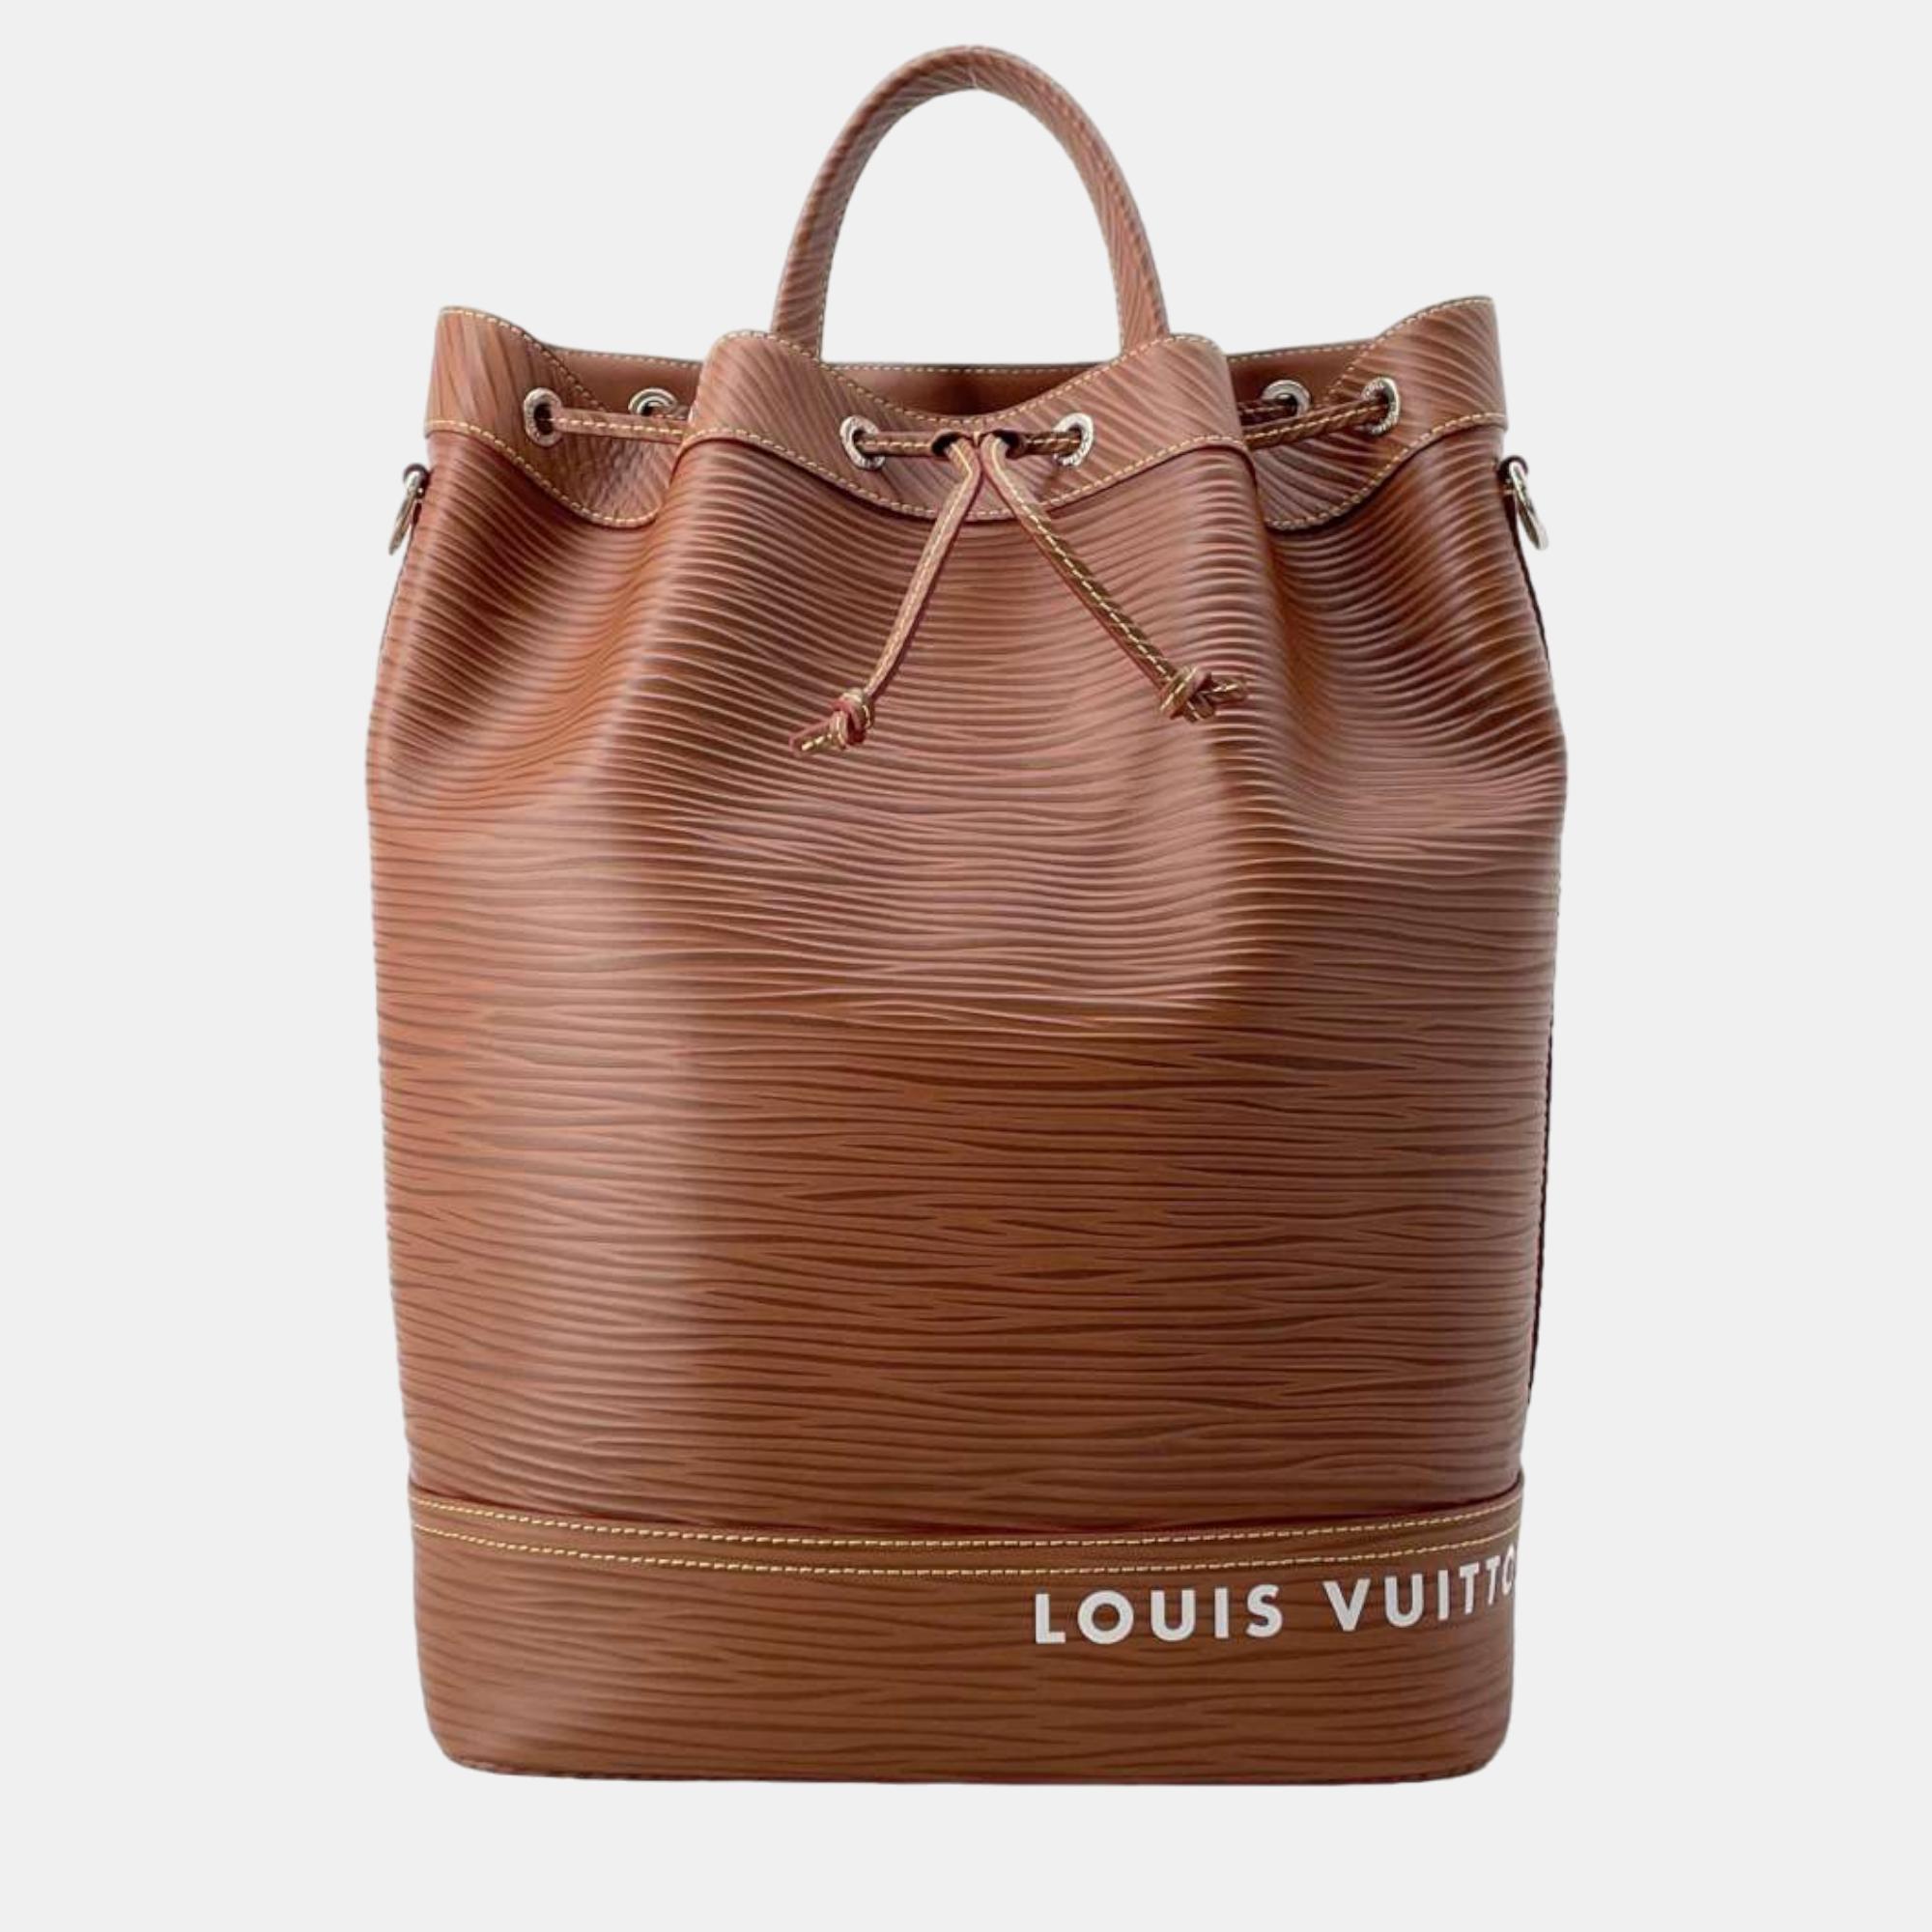 Louis vuitton cognac epi leather maxi noe sling bag